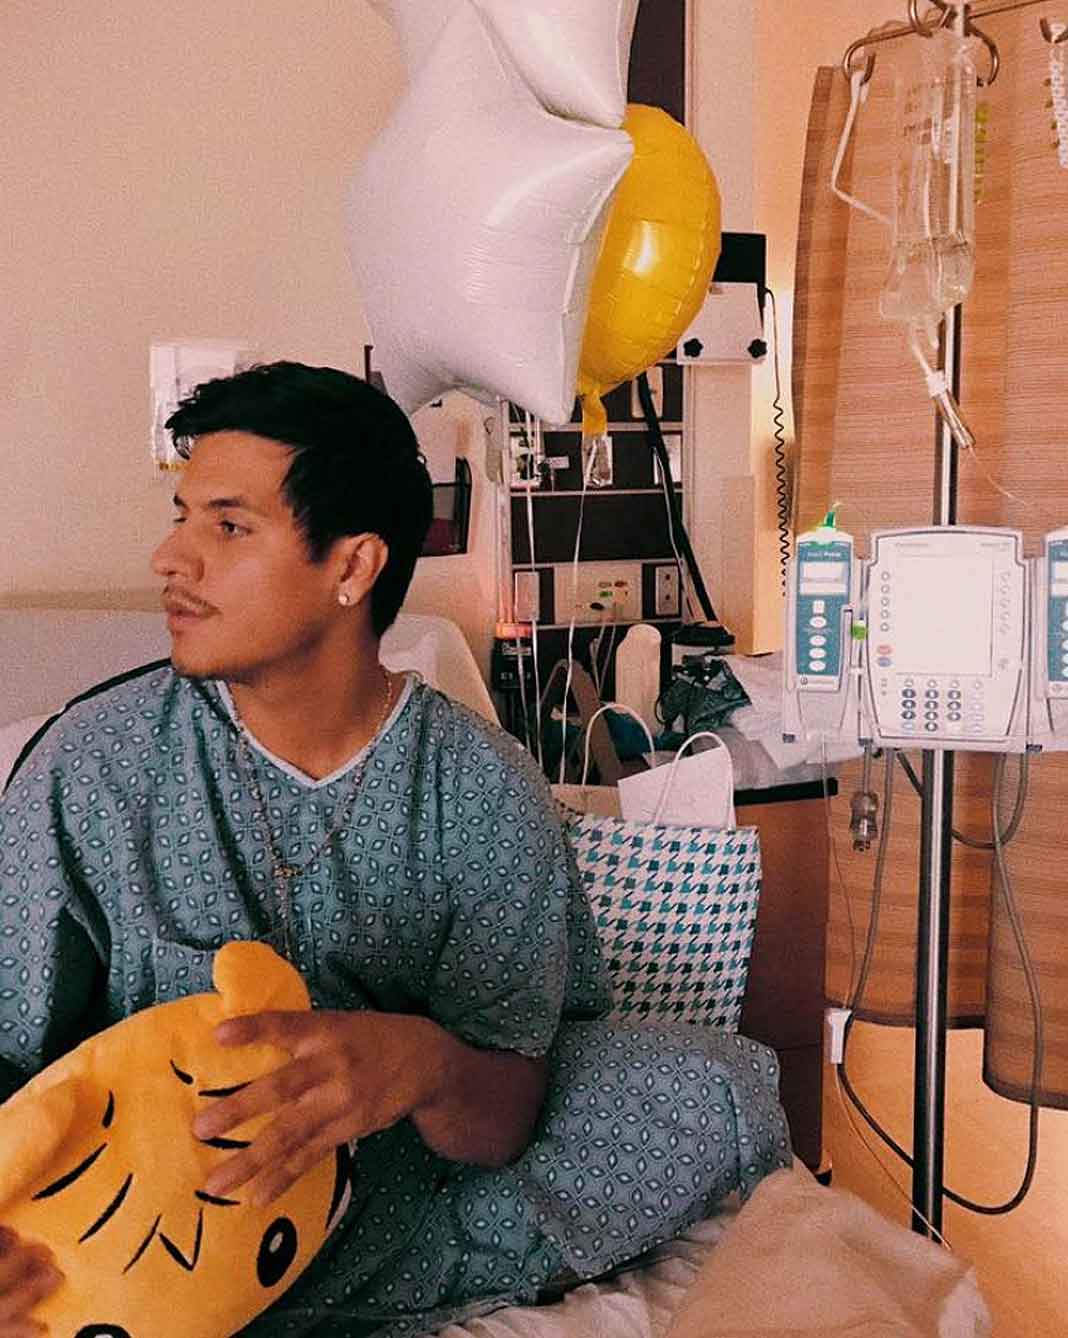 Luis Alberto subió esta foto en el hospital, donde vemos que hasta regalitos le han llevado